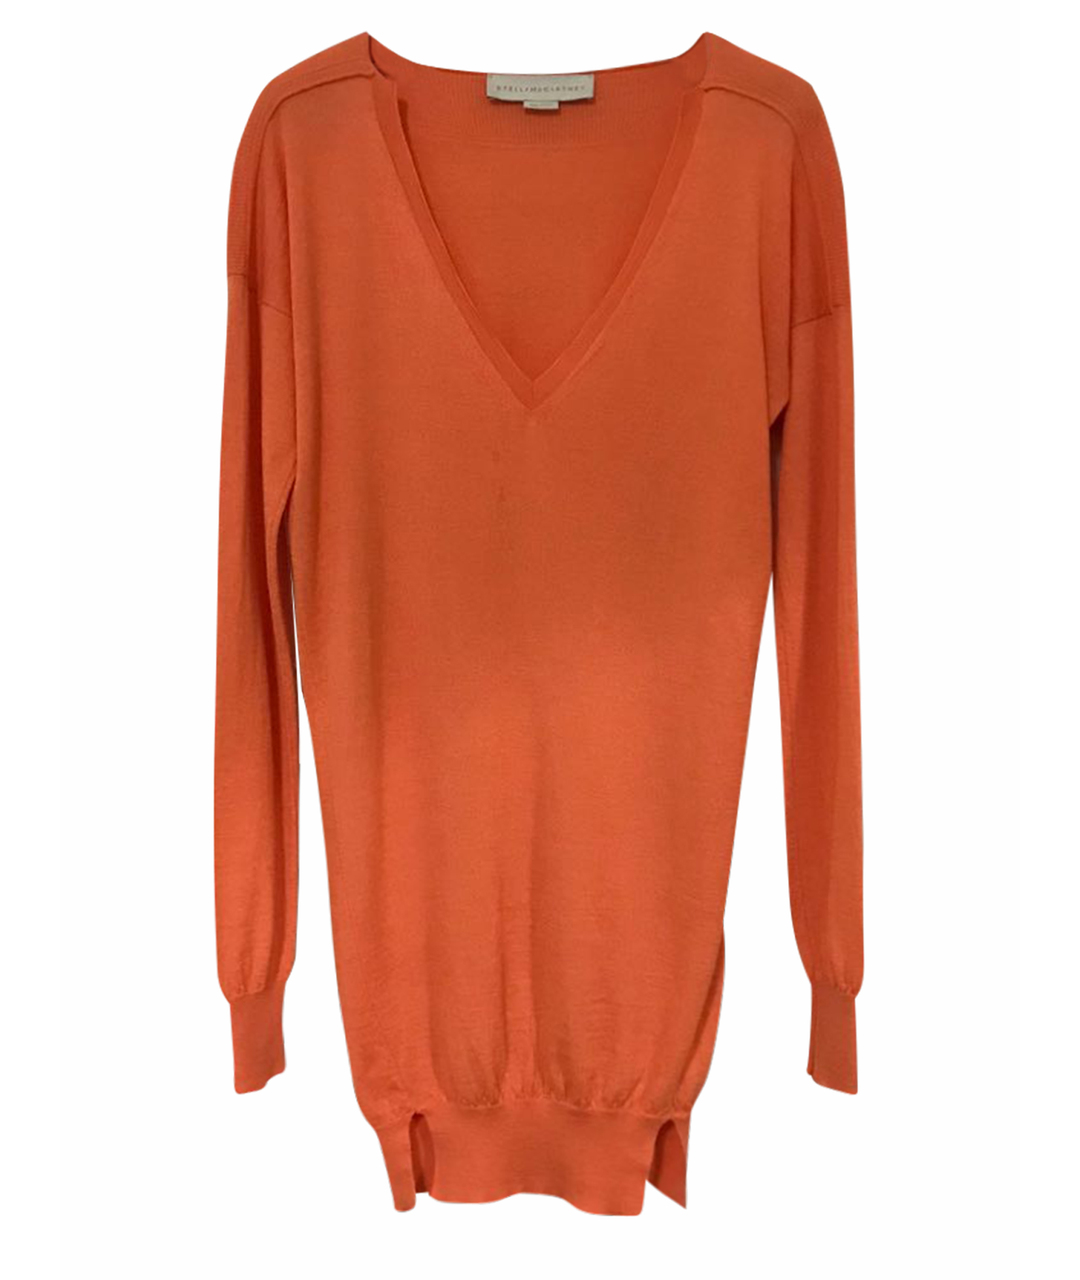 STELLA MCCARTNEY Оранжевый шерстяной джемпер / свитер, фото 1